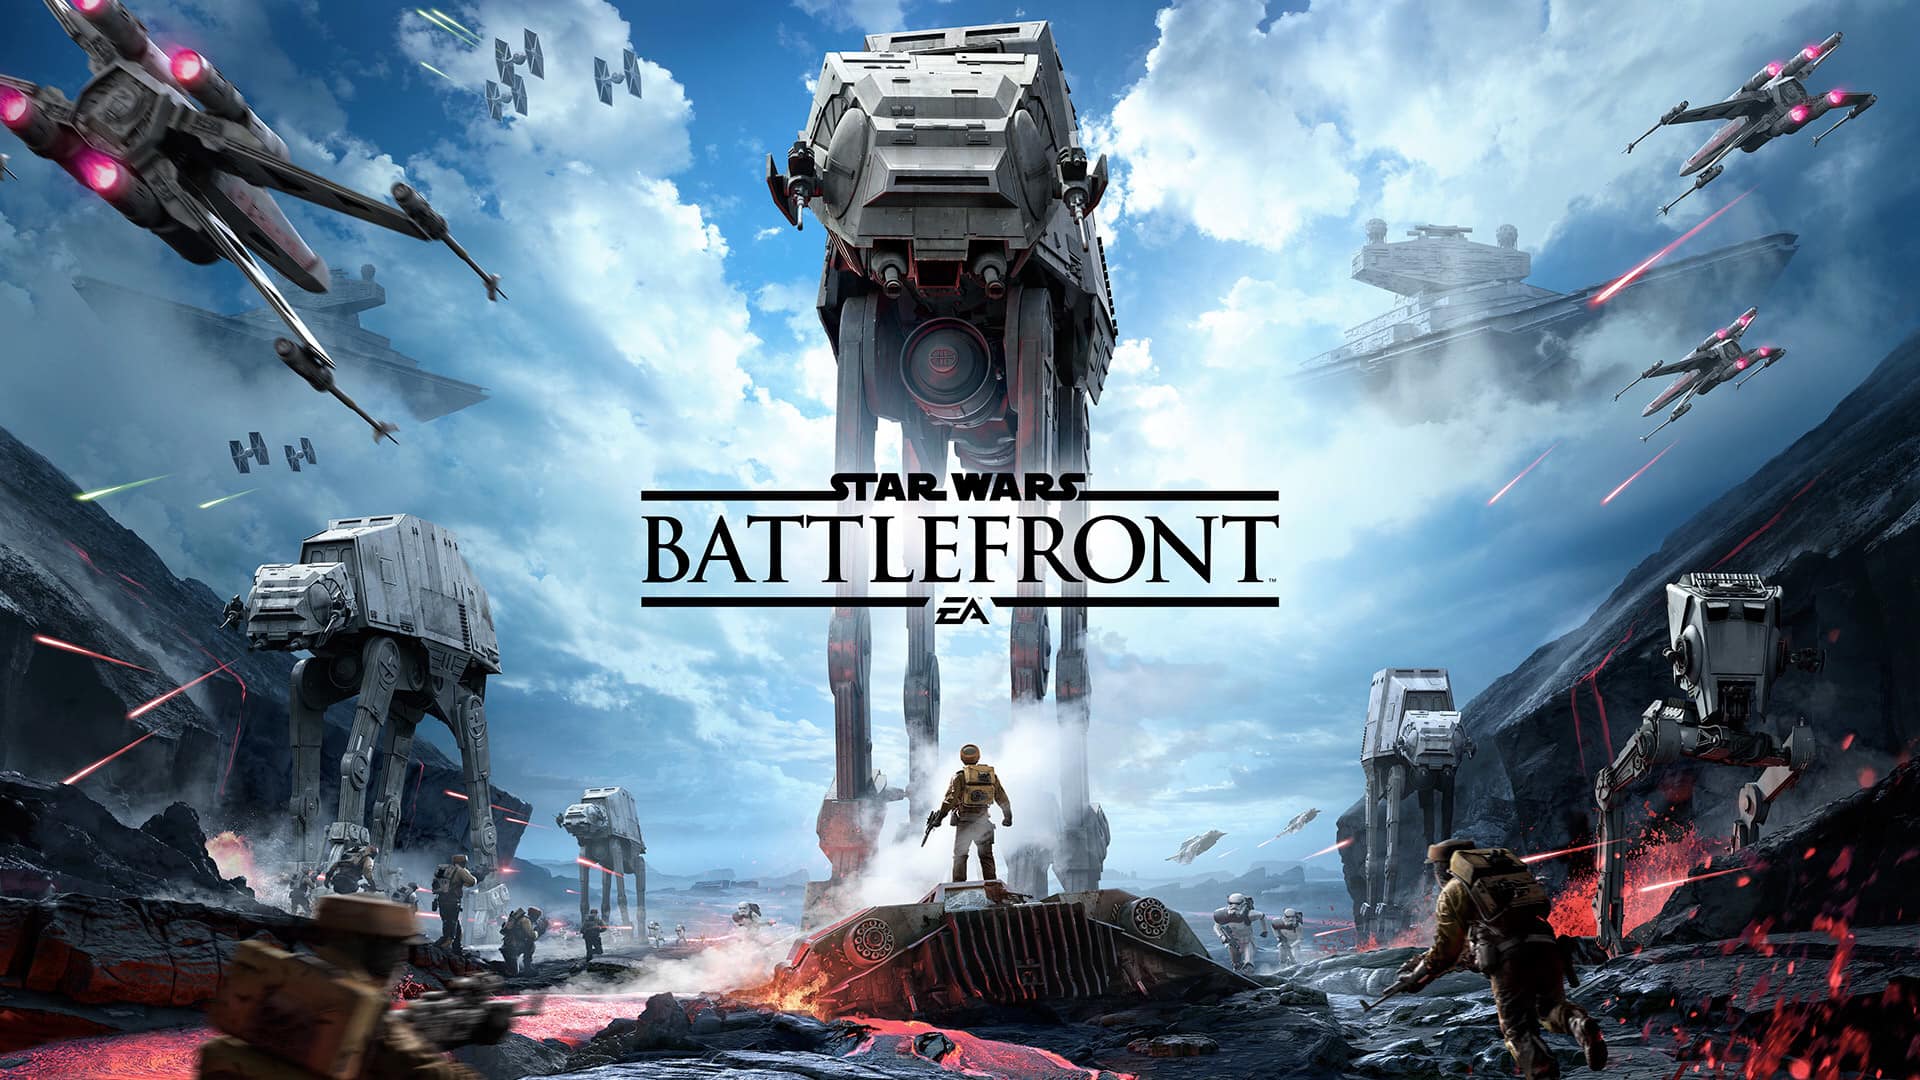 Star Wars Battlefront - EA